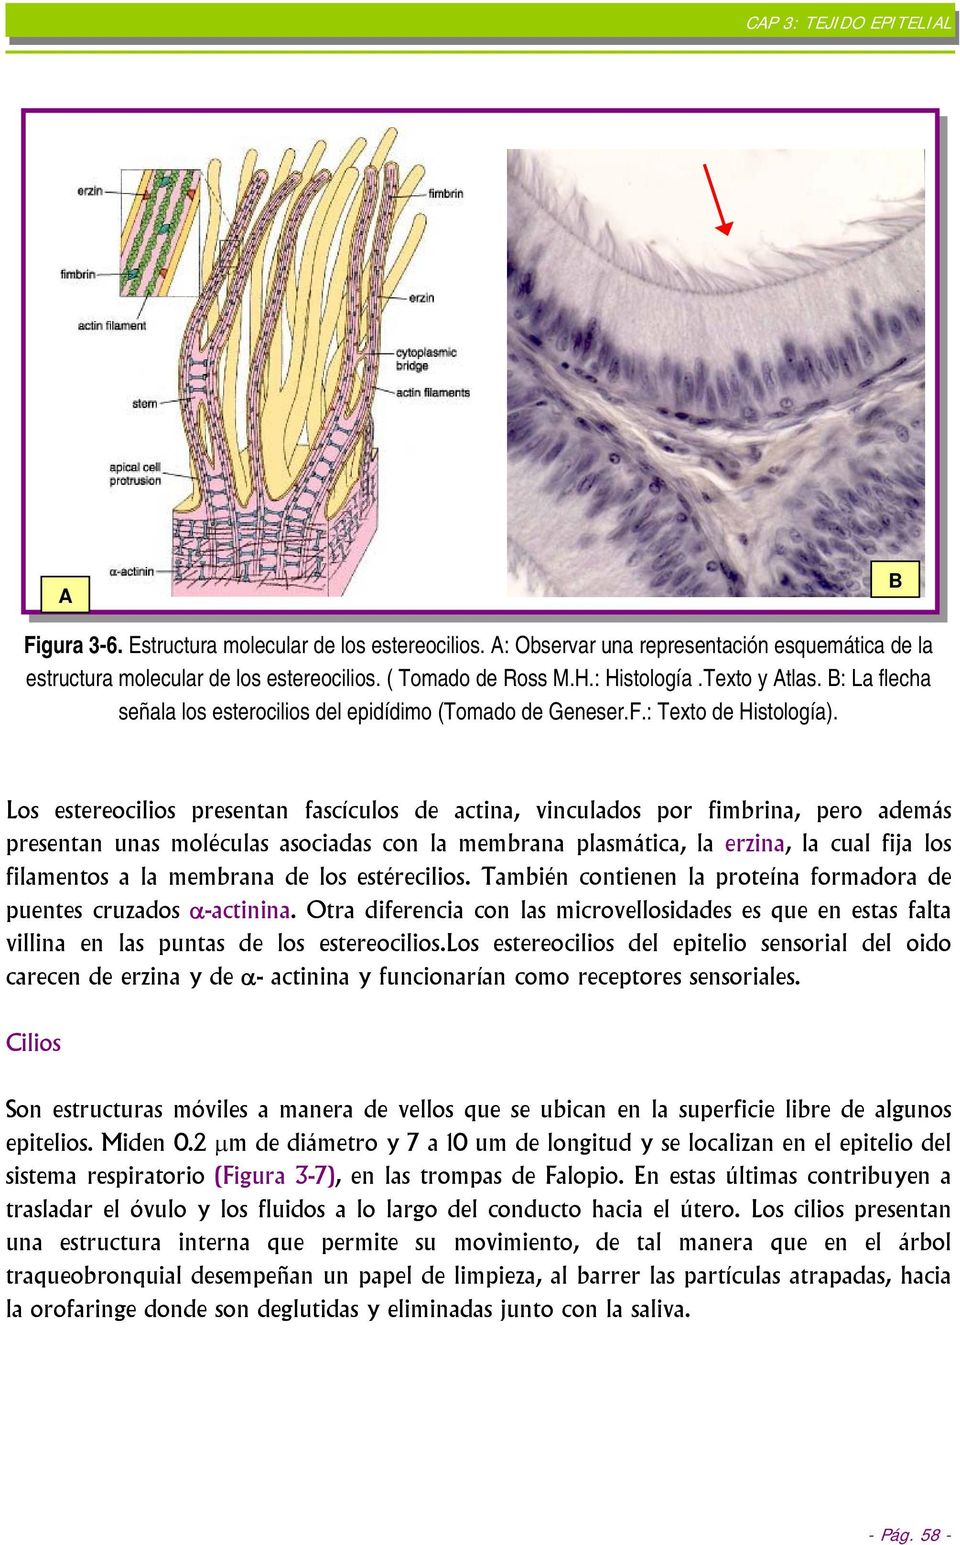 Los estereocilios presentan fascículos de actina, vinculados por fimbrina, pero además presentan unas moléculas asociadas con la membrana plasmática, la erzina, la cual fija los filamentos a la